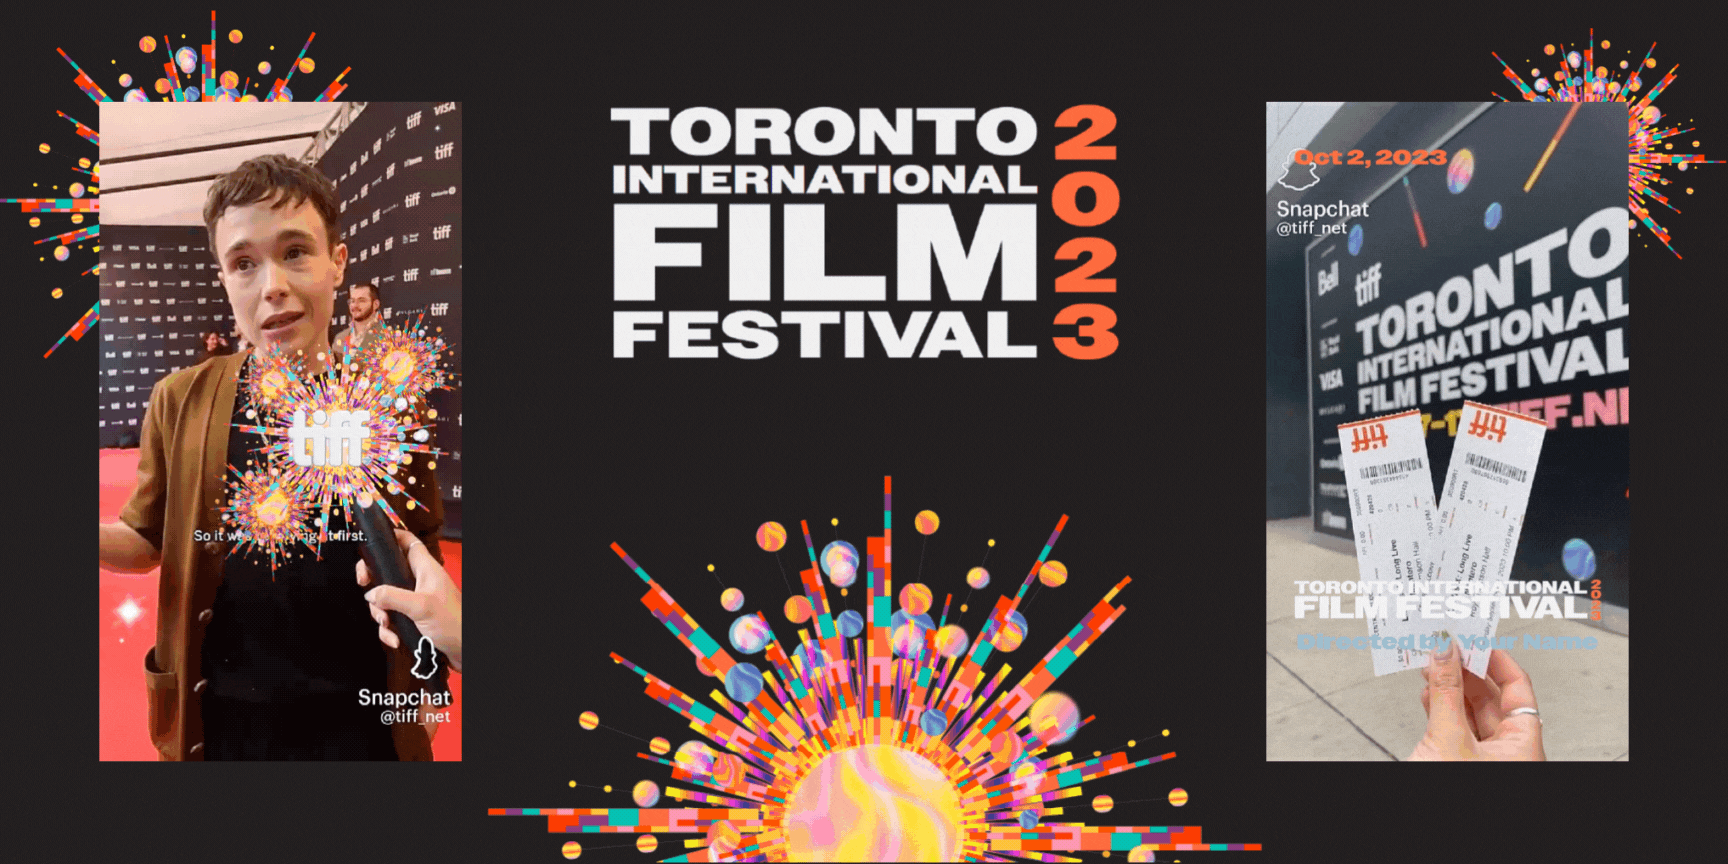 AR experiences for TIFF Toronto Film Festival 2023 event